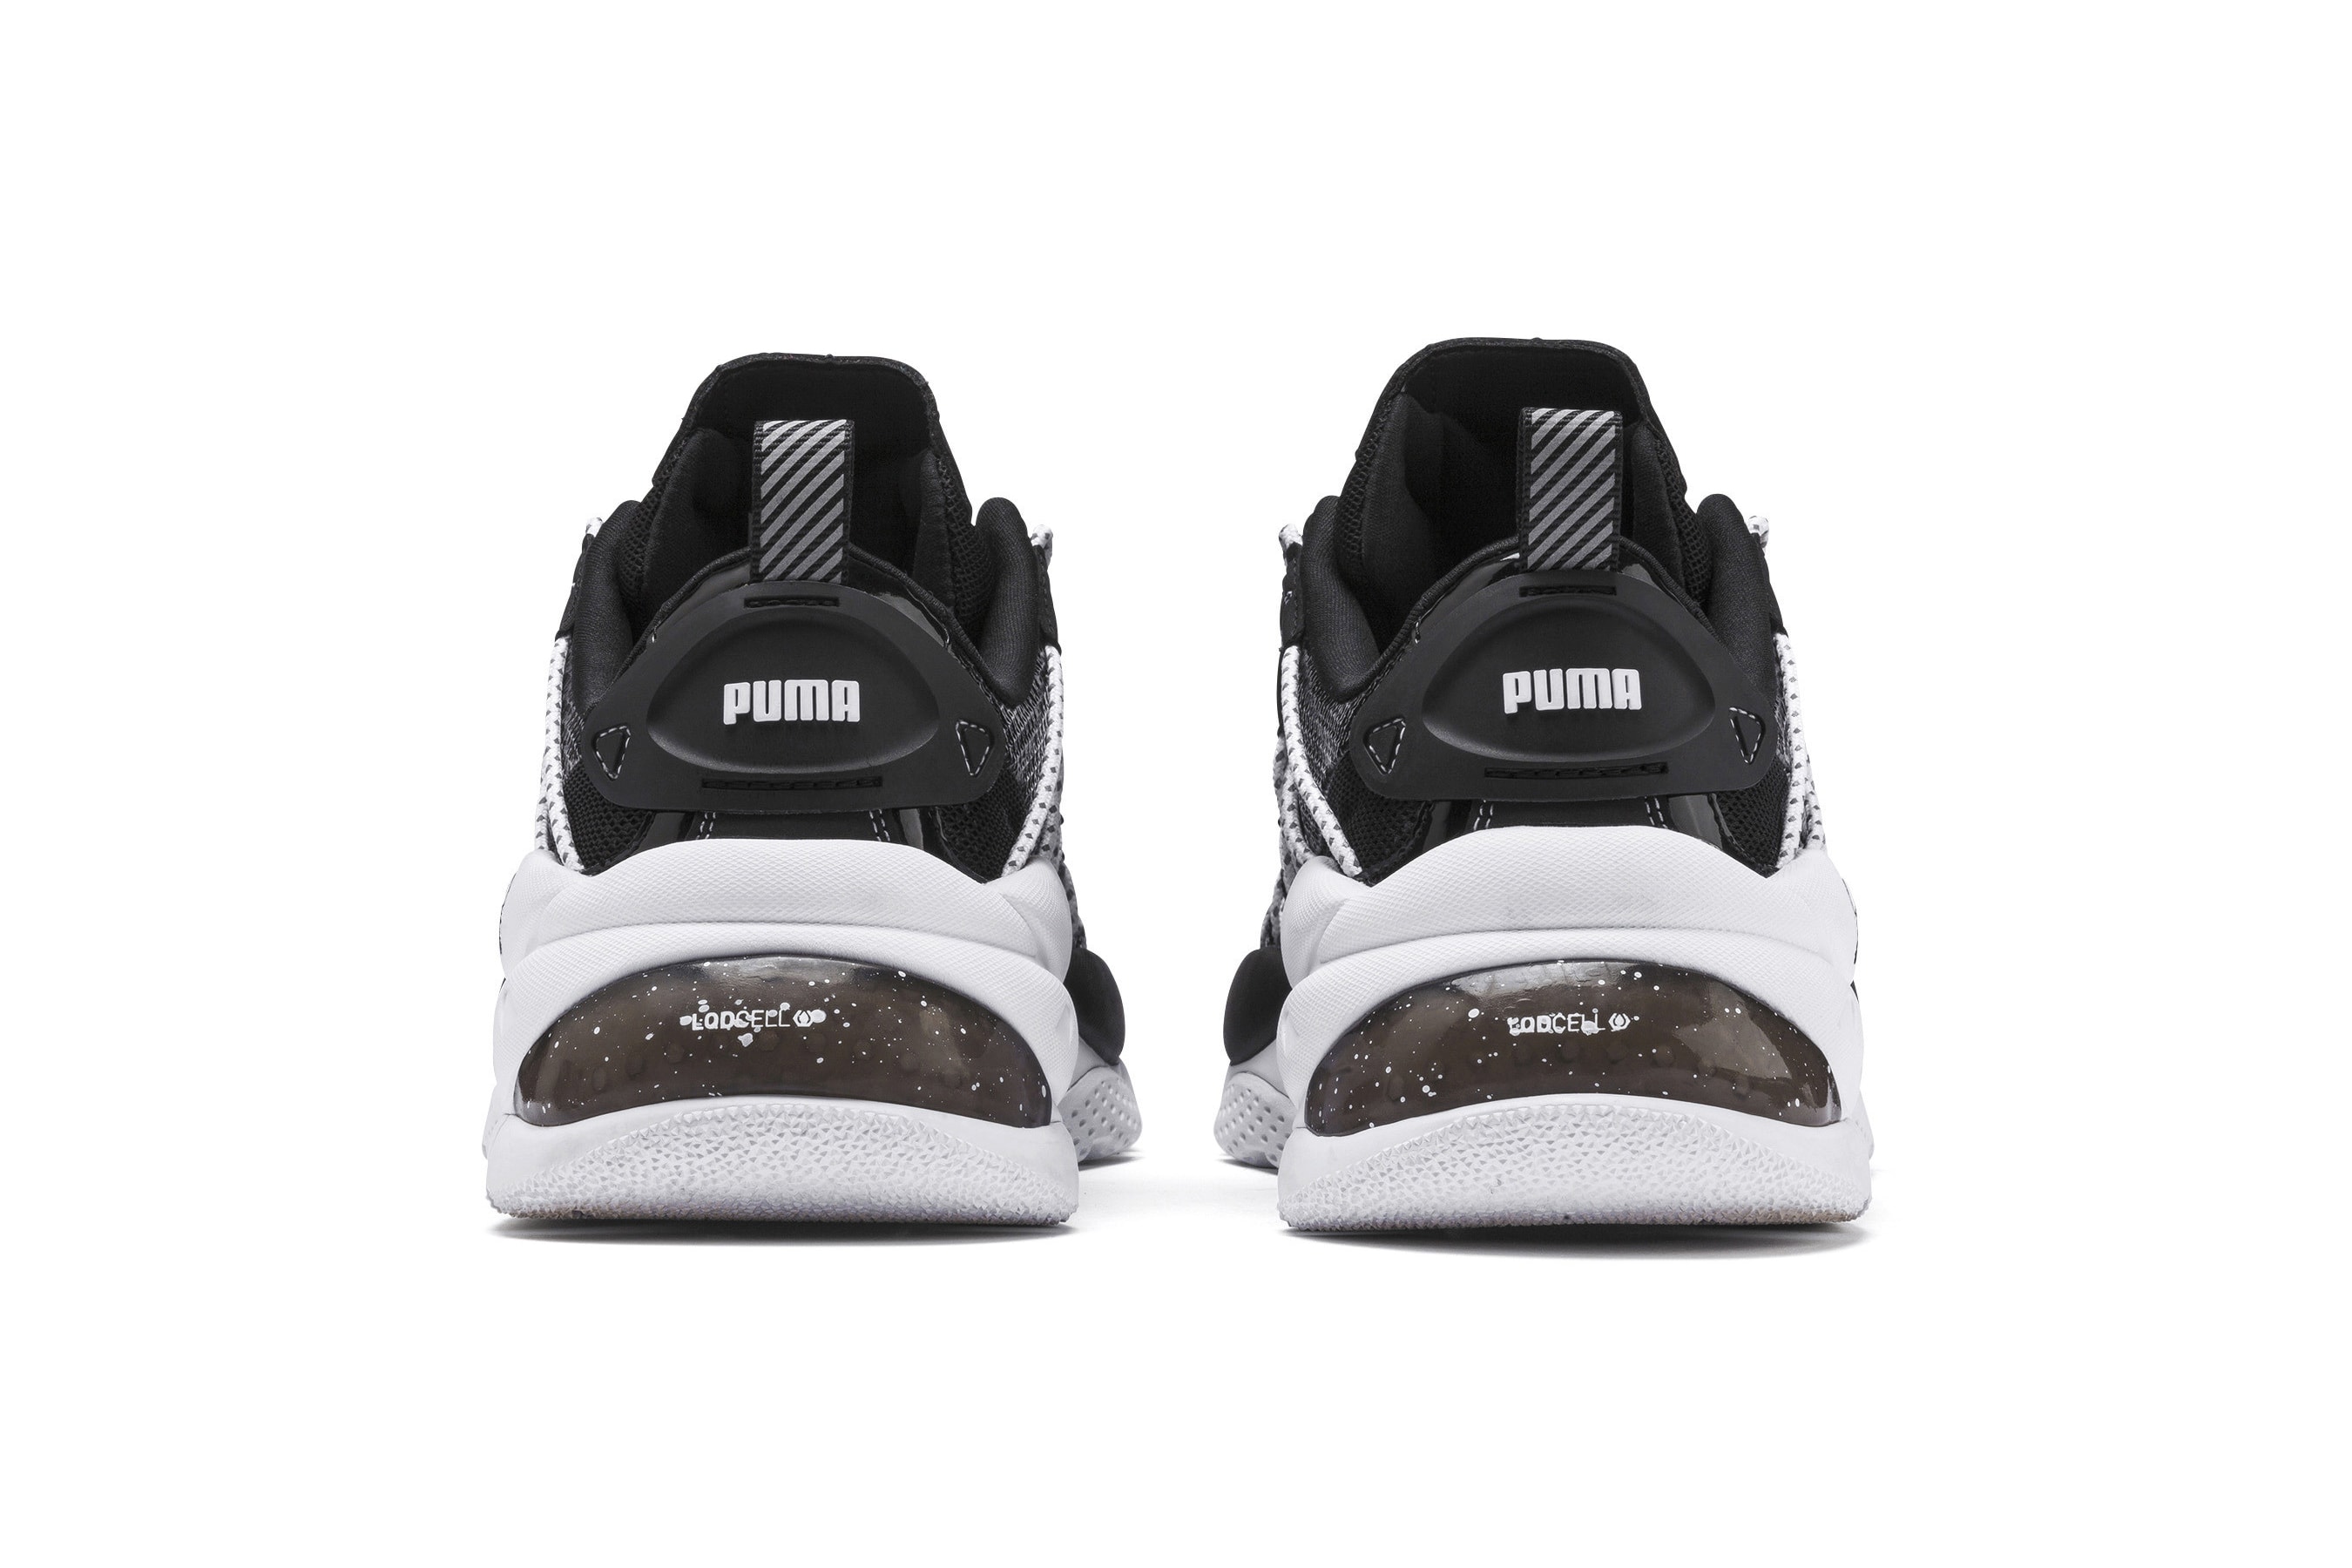 PUMA LQD Cell Omega Density Sneakers Black& White Release